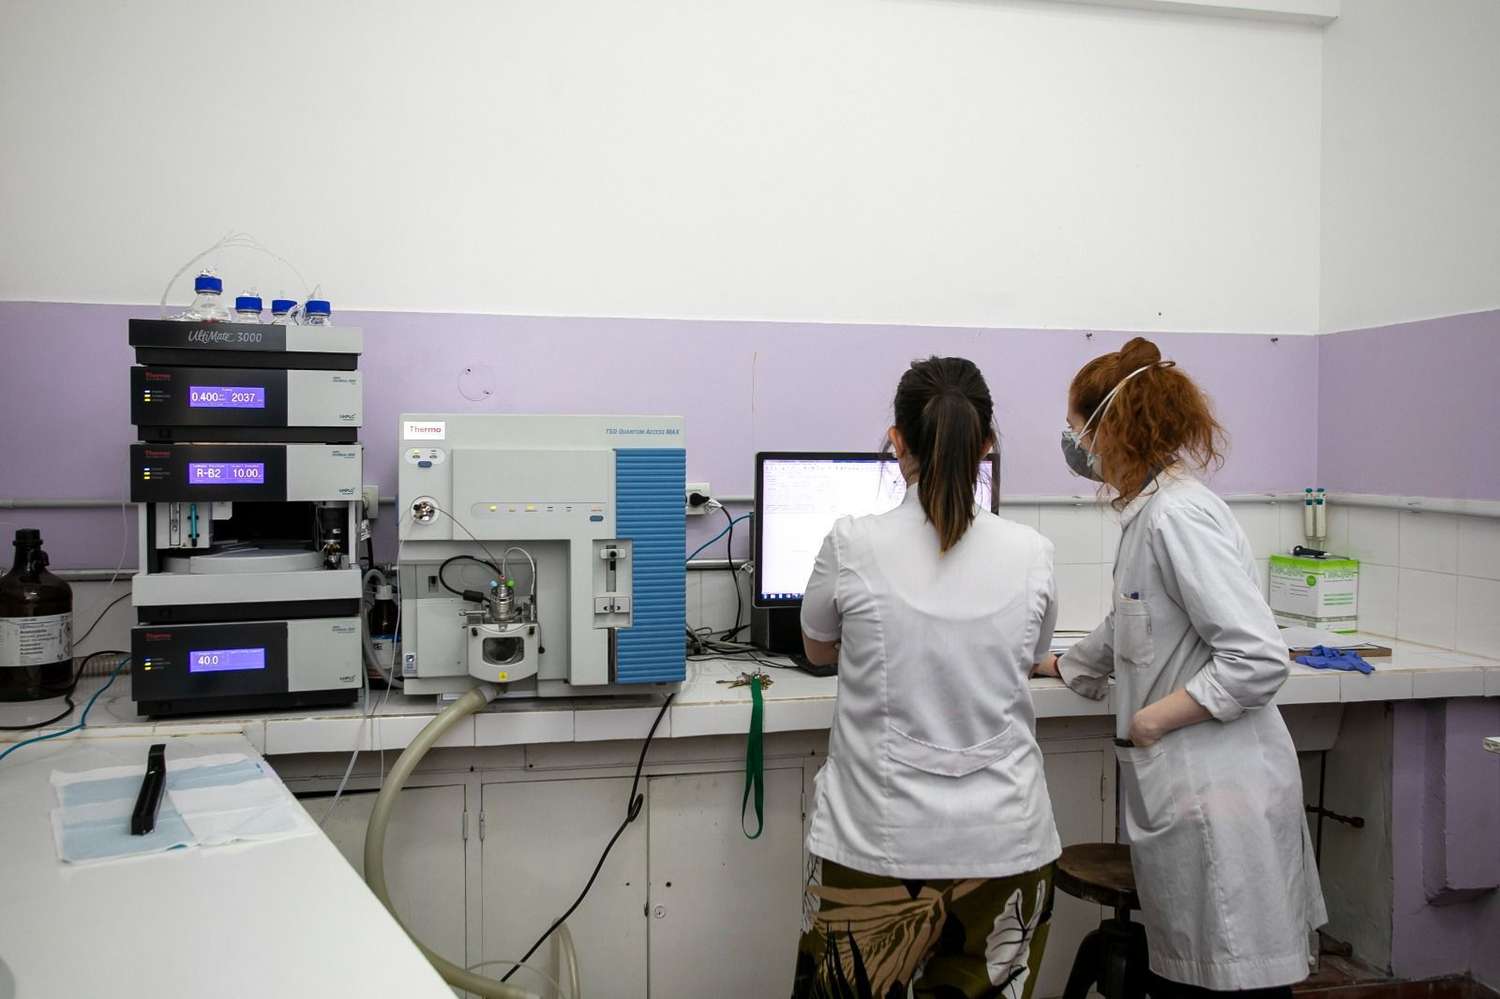 El Programa Federal “Equipar Ciencia” adjudicó en Tandil equipamiento por 87 millones de pesos